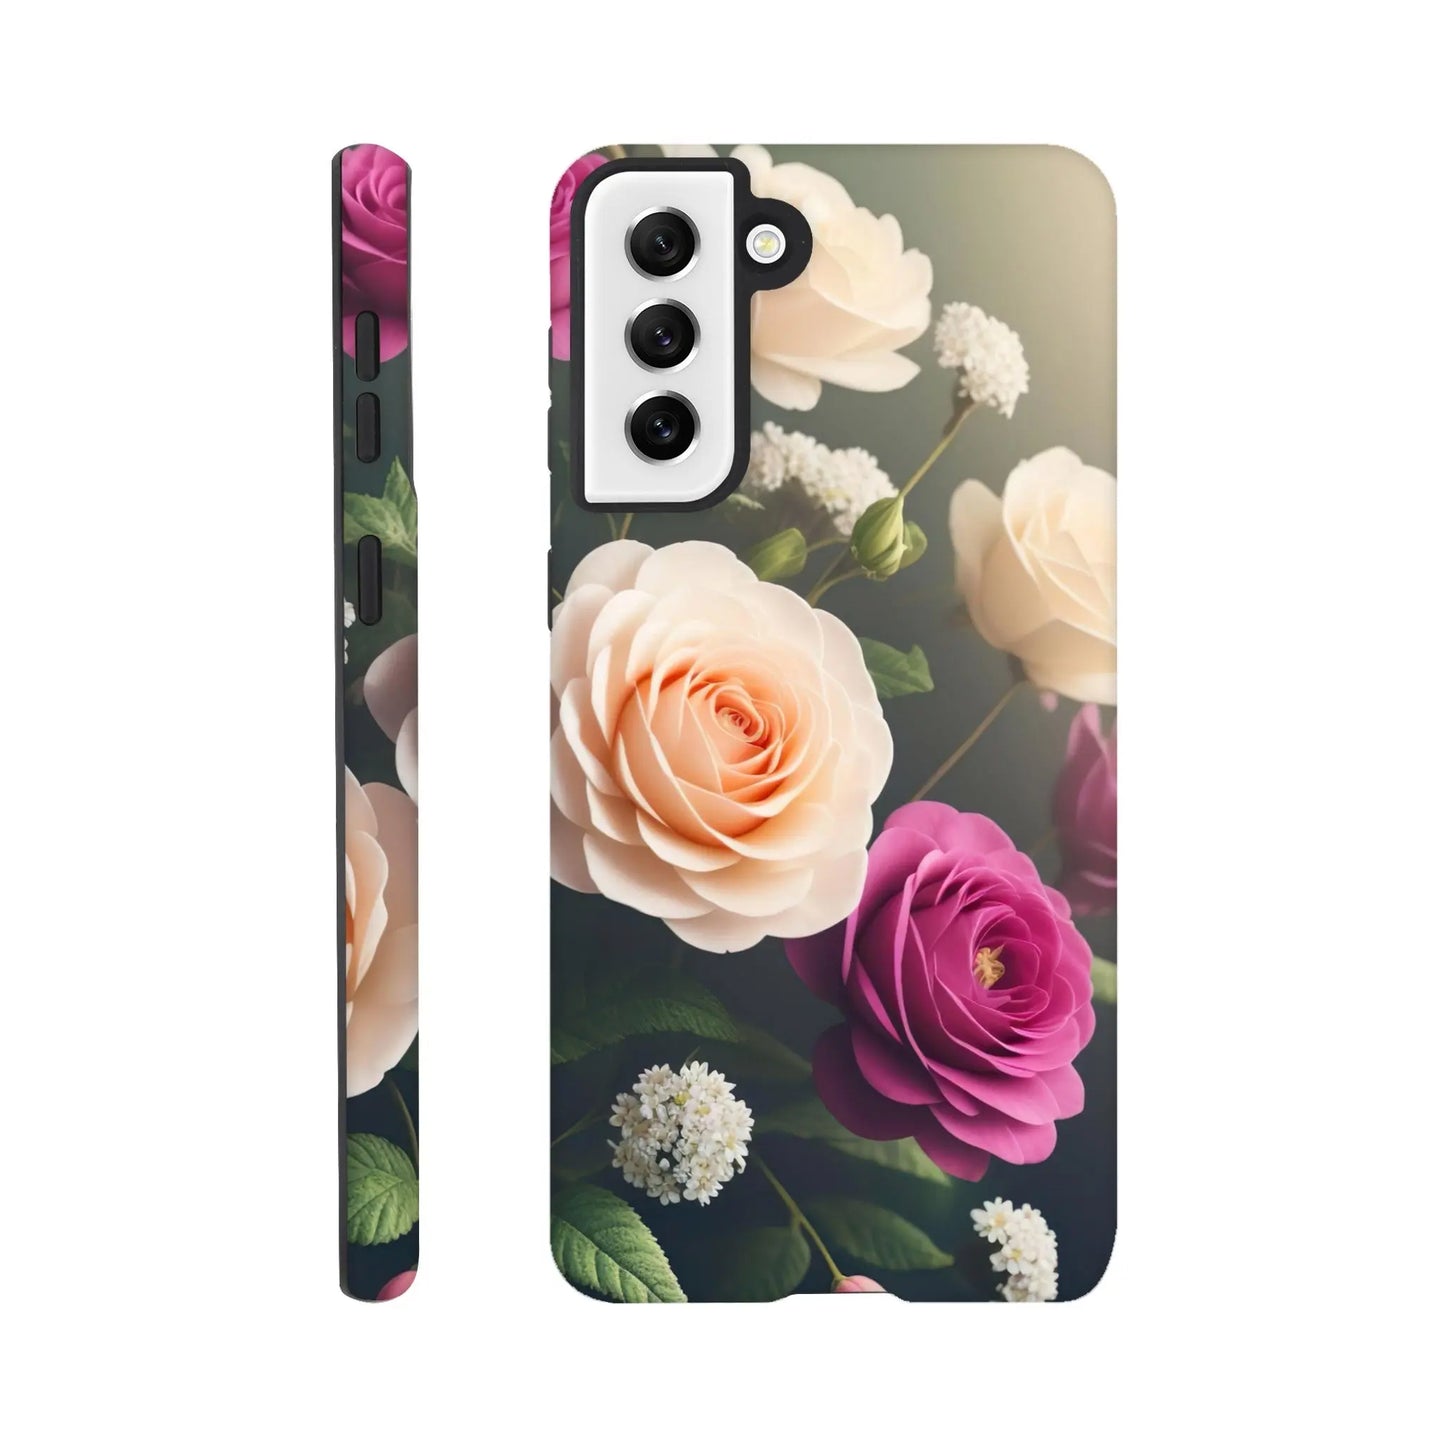 Smartphone-Hülle "Hart" - Blumen Vielfalt - Foto Stil, KI-Kunst, Pflanzen, Galaxy-S21-Plus - RolConArt